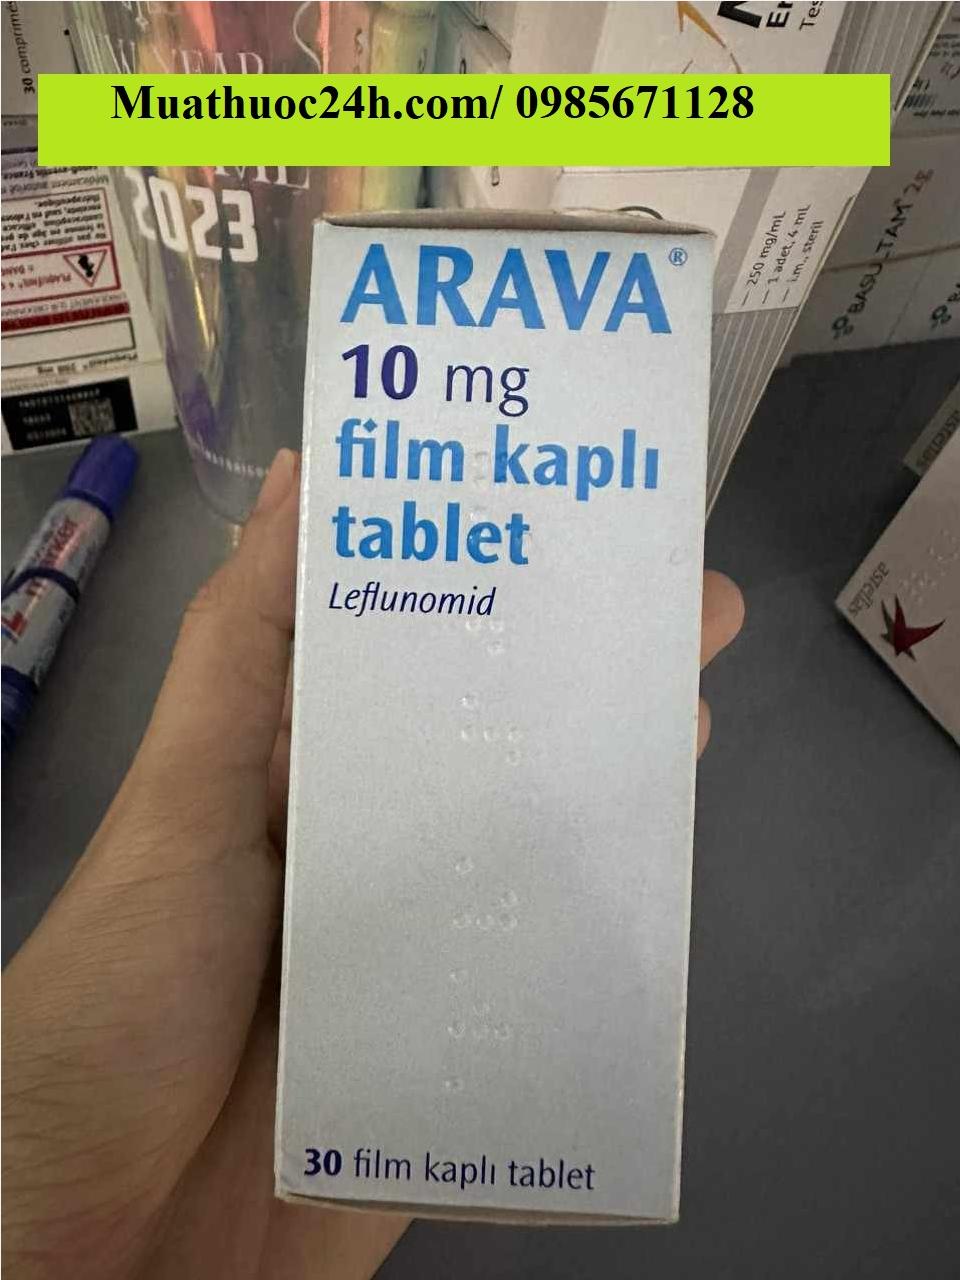 Thuốc Arava 20mg Leflunomide giá bao nhiêu mua ở đâu?